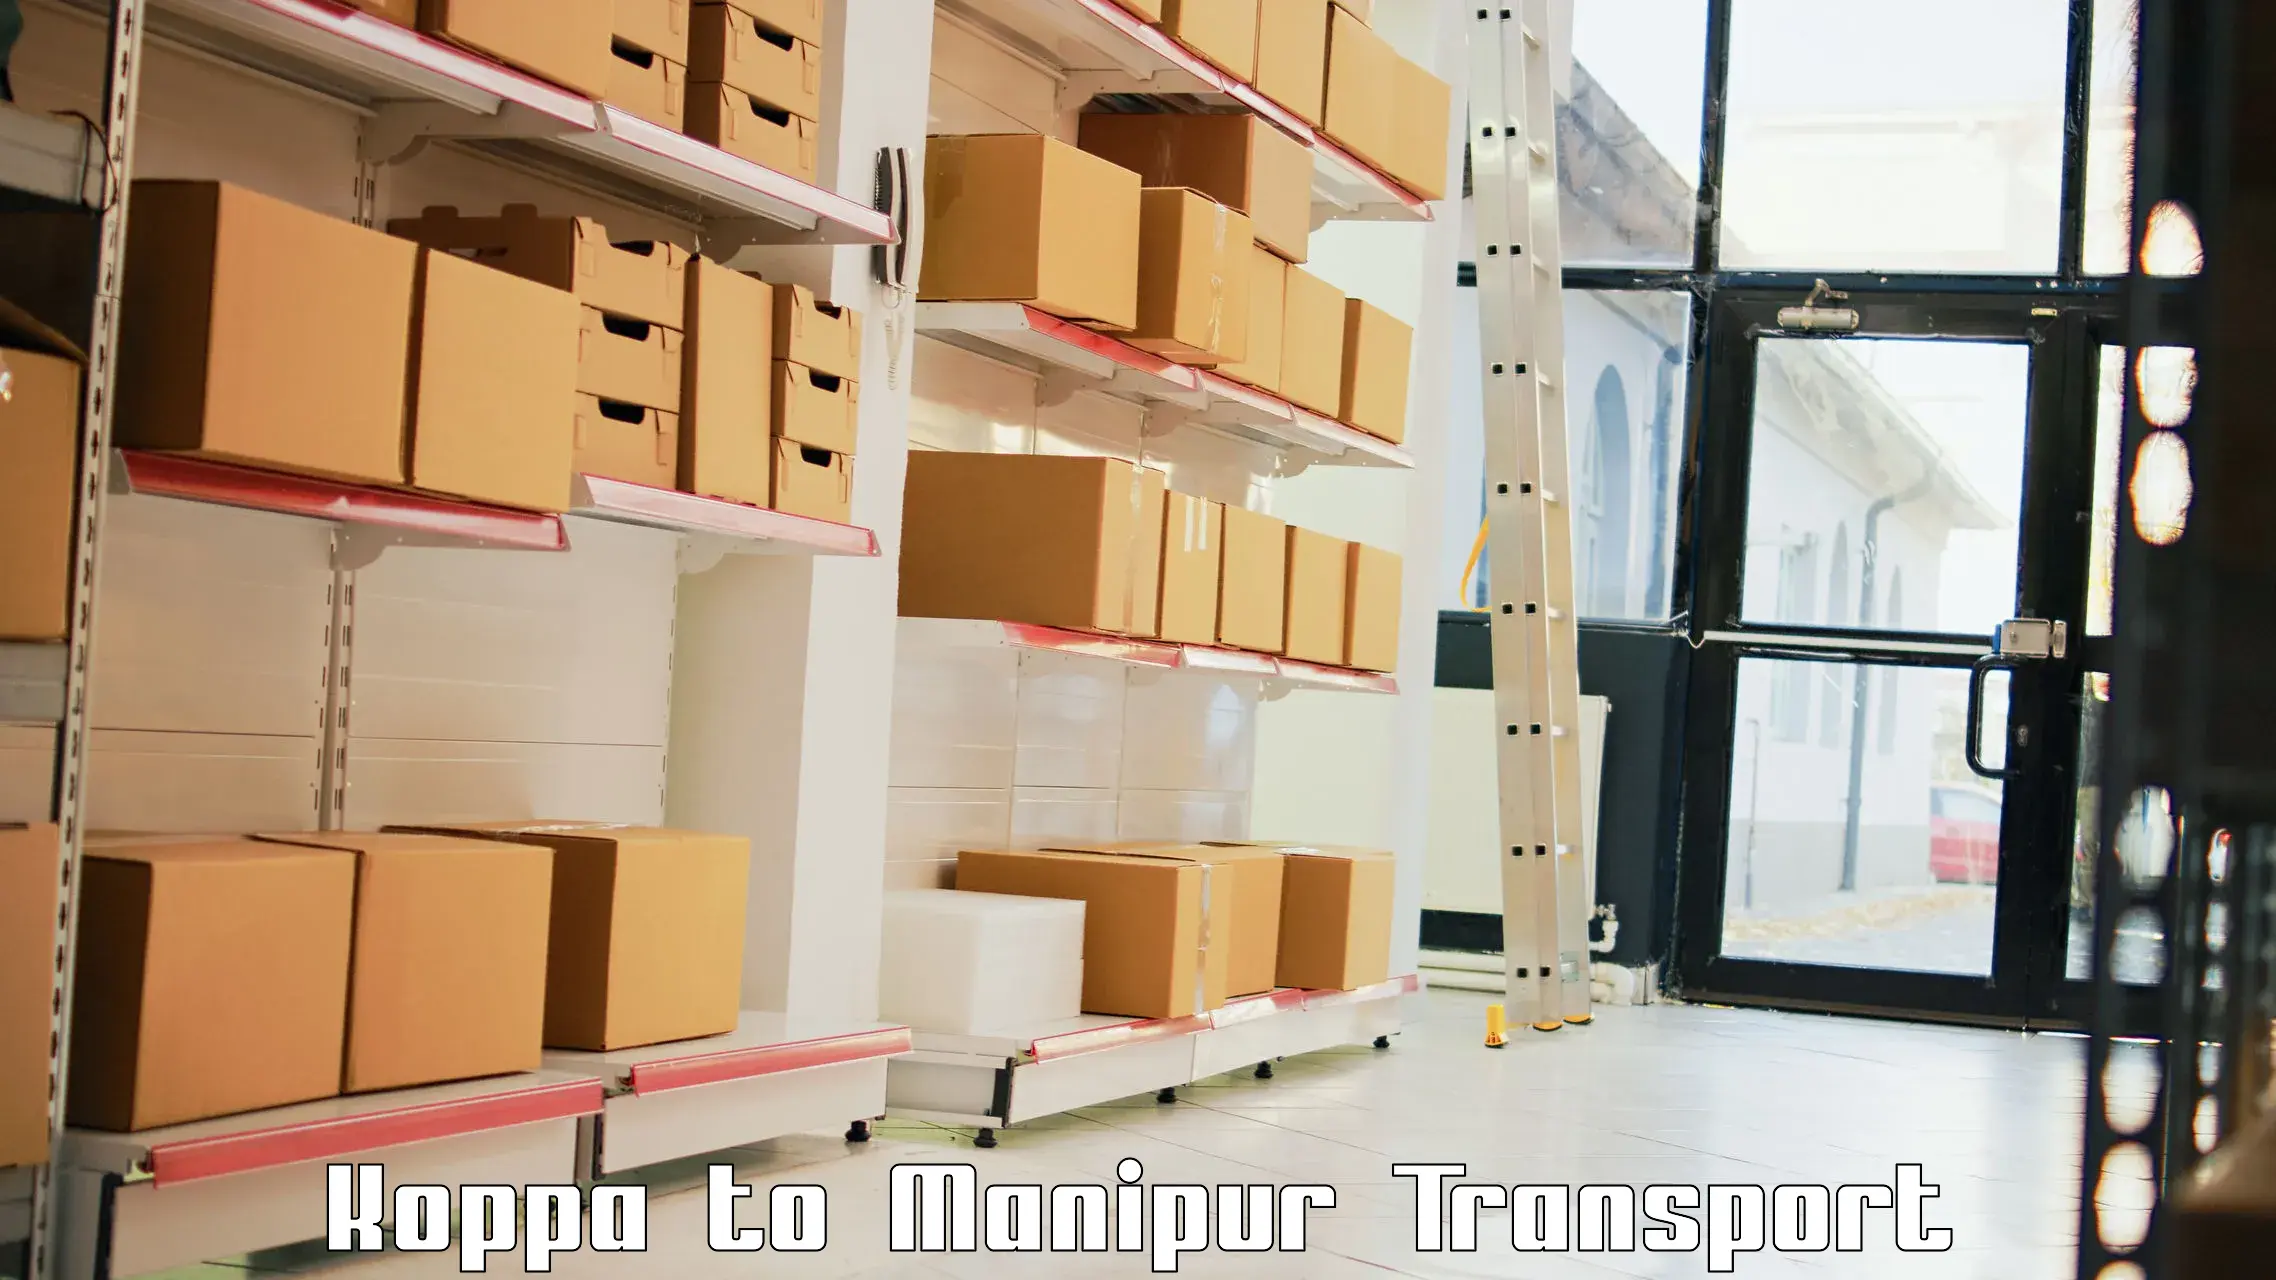 Cargo transportation services Koppa to Kanti